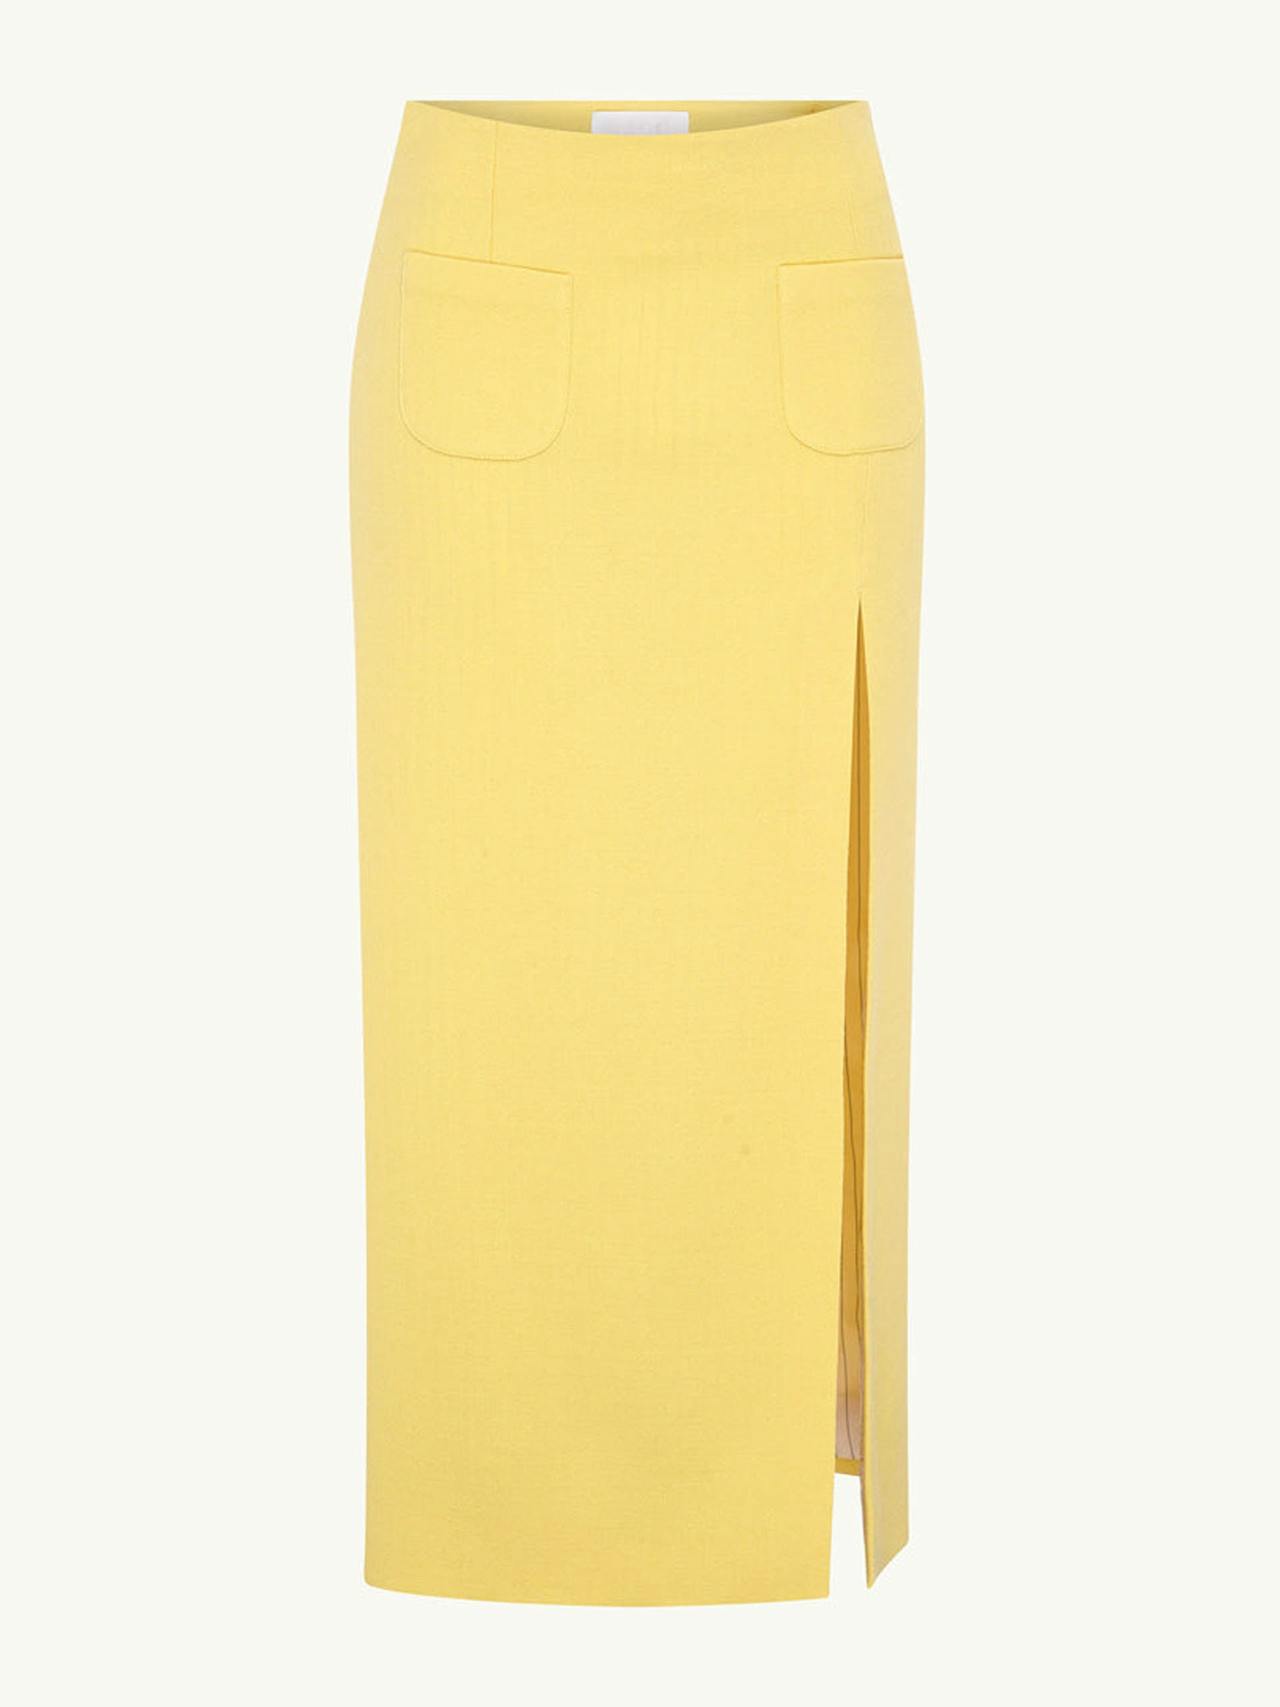 Yellow Milo skirt